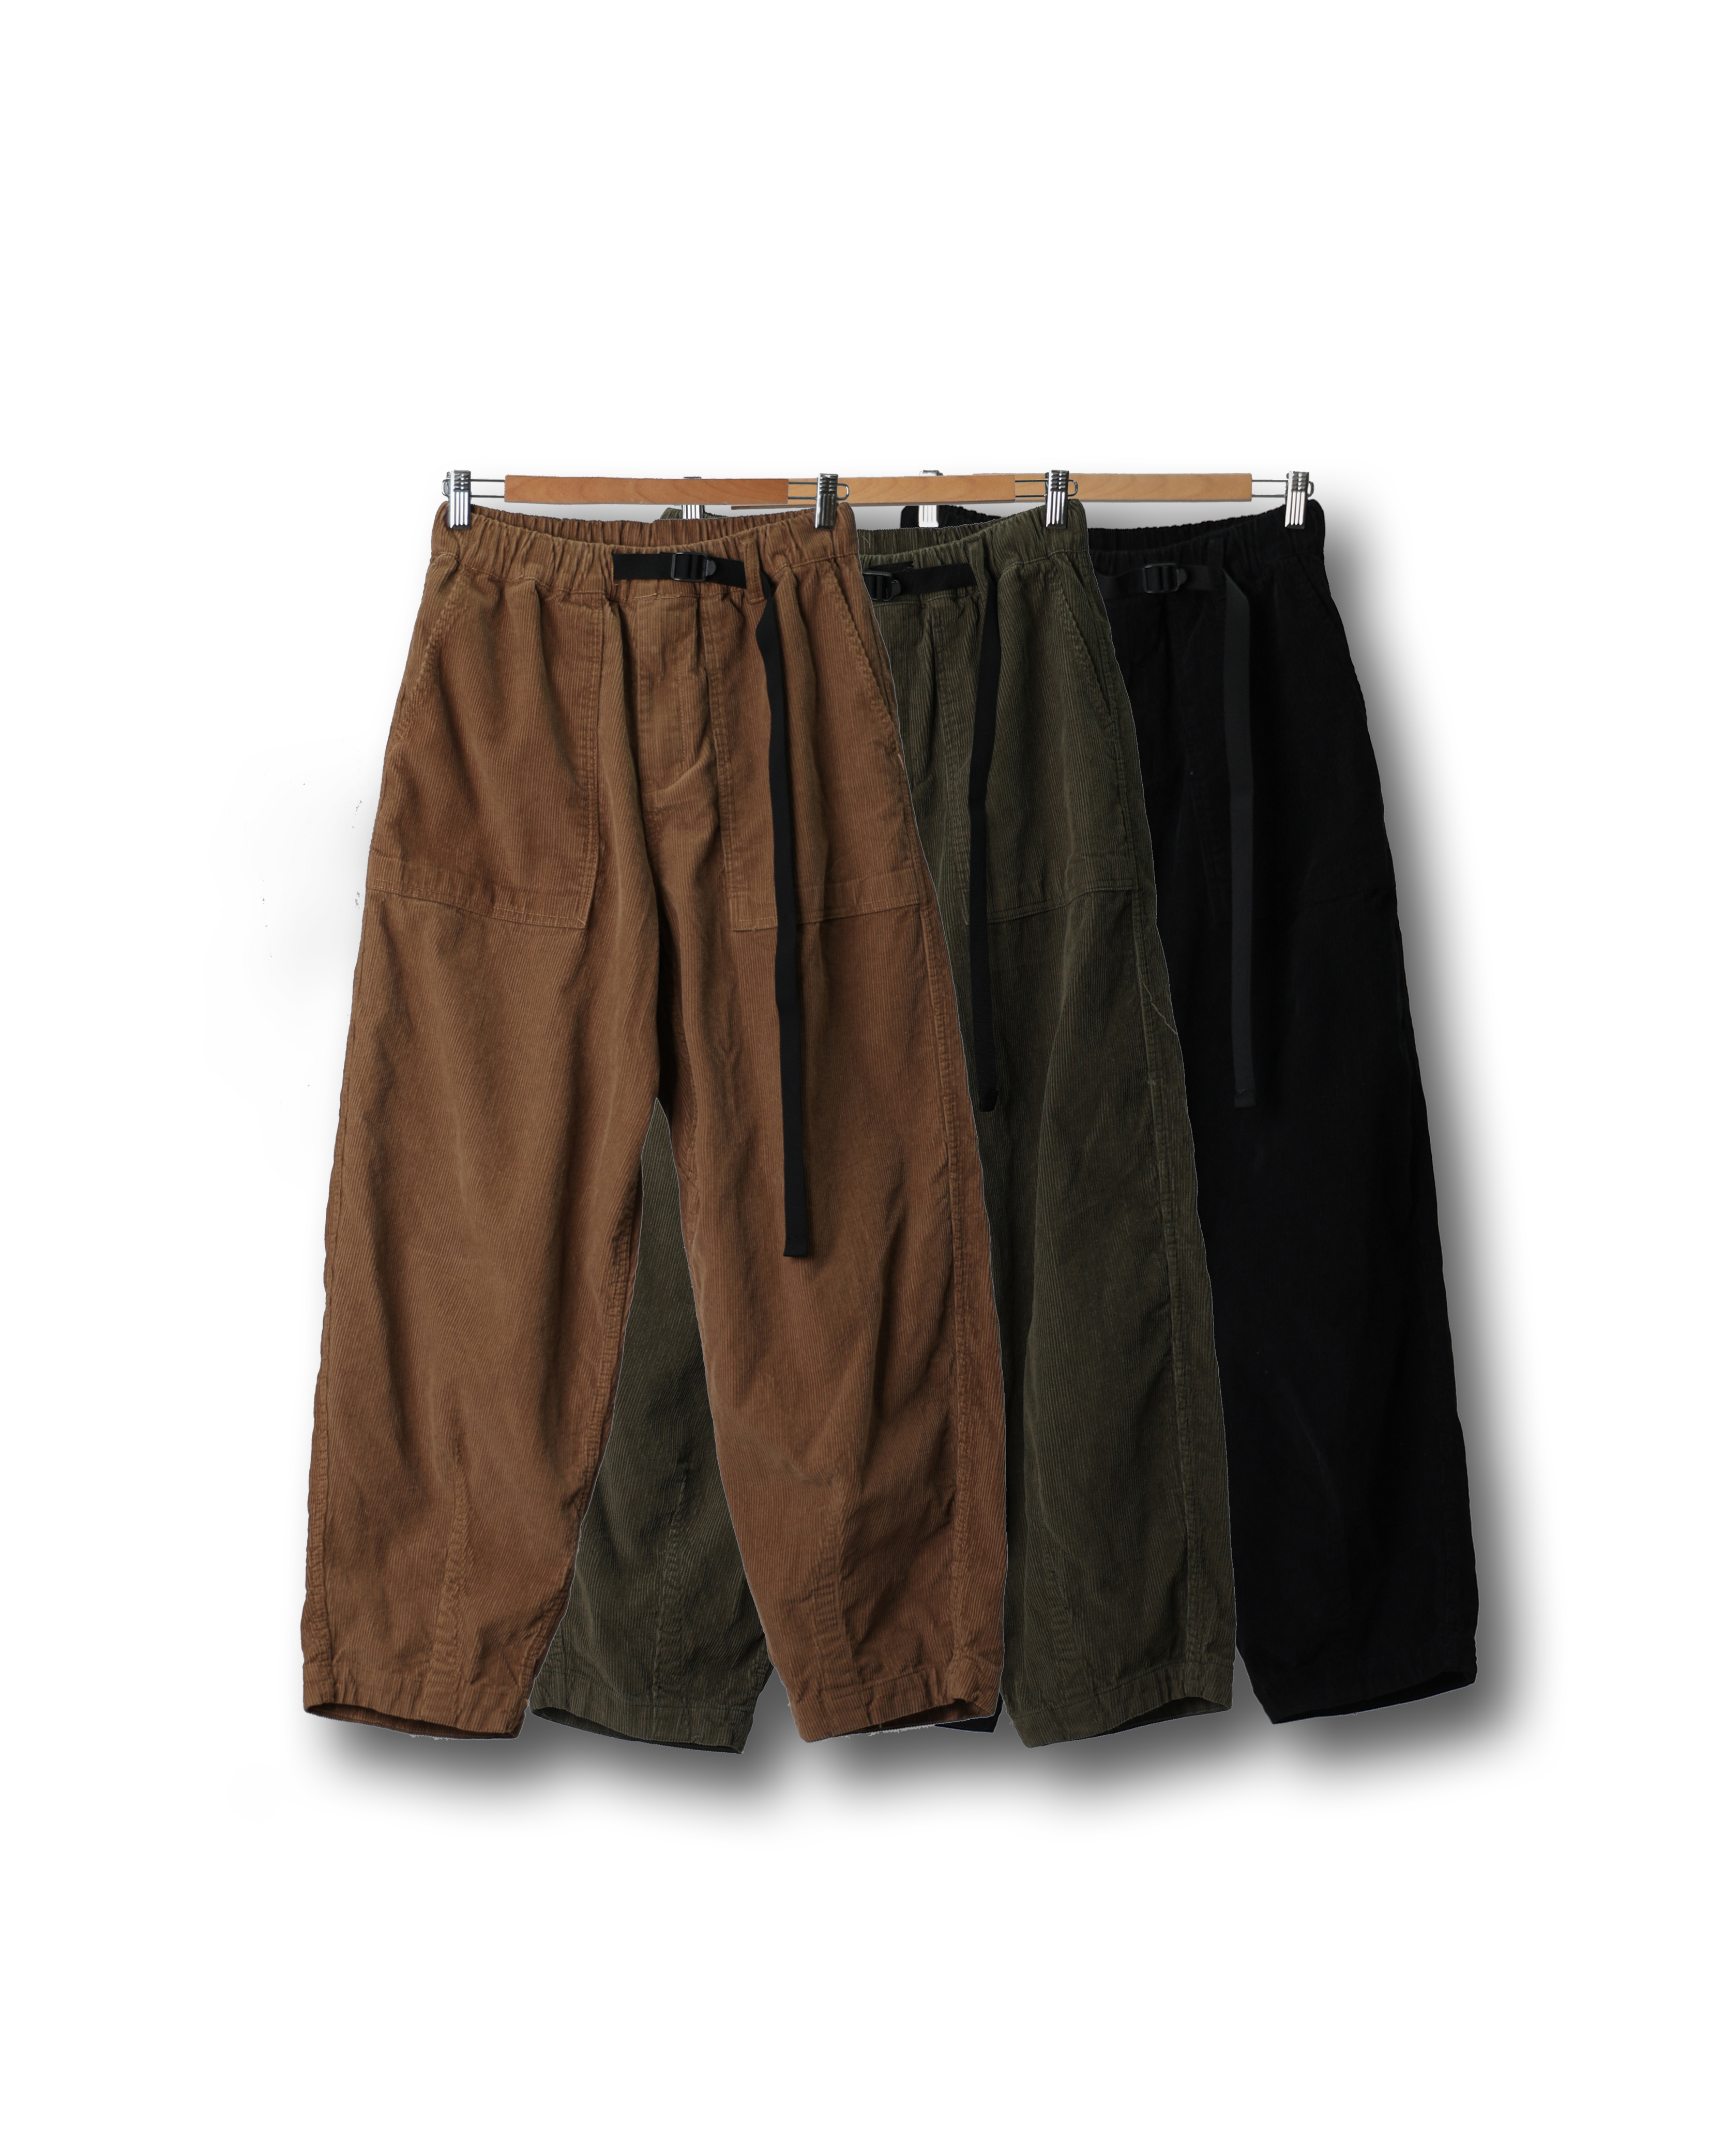 PECTOR Corduroy Belted Hiker Pants (Black/Olive/Beige)